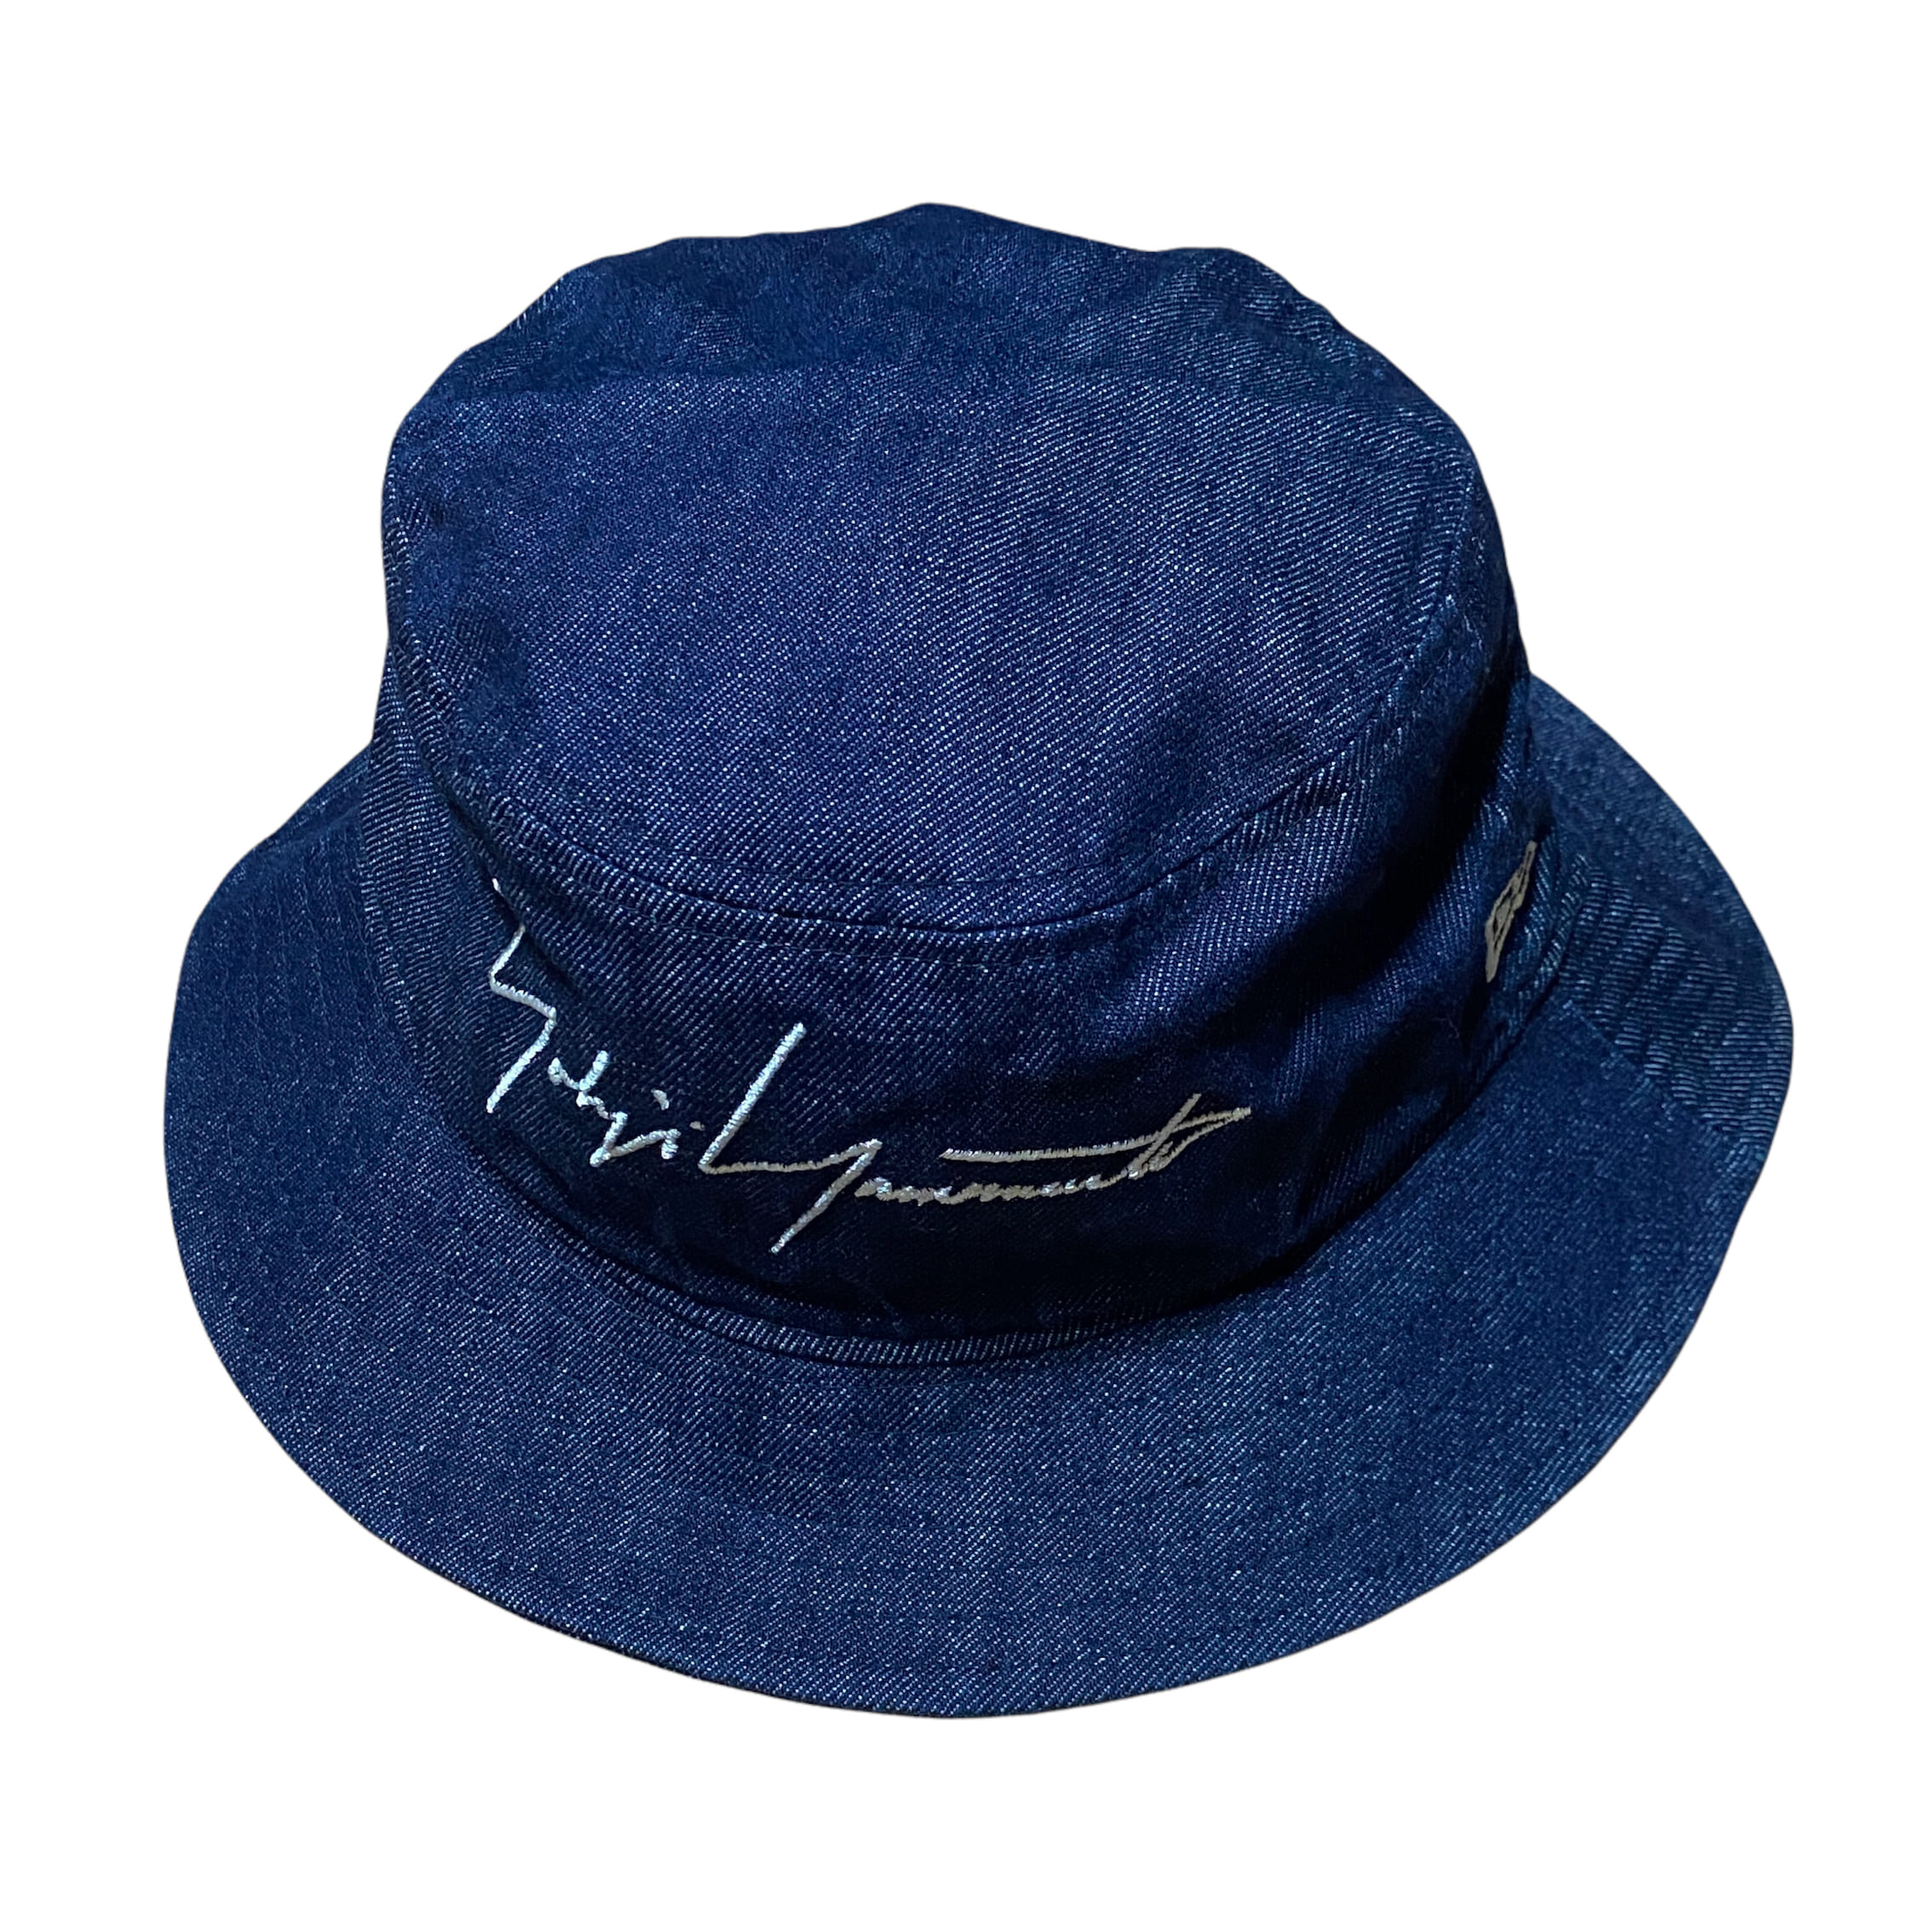 [Yohji Yamamoto X New Era] Bucket Hat - Size M/L